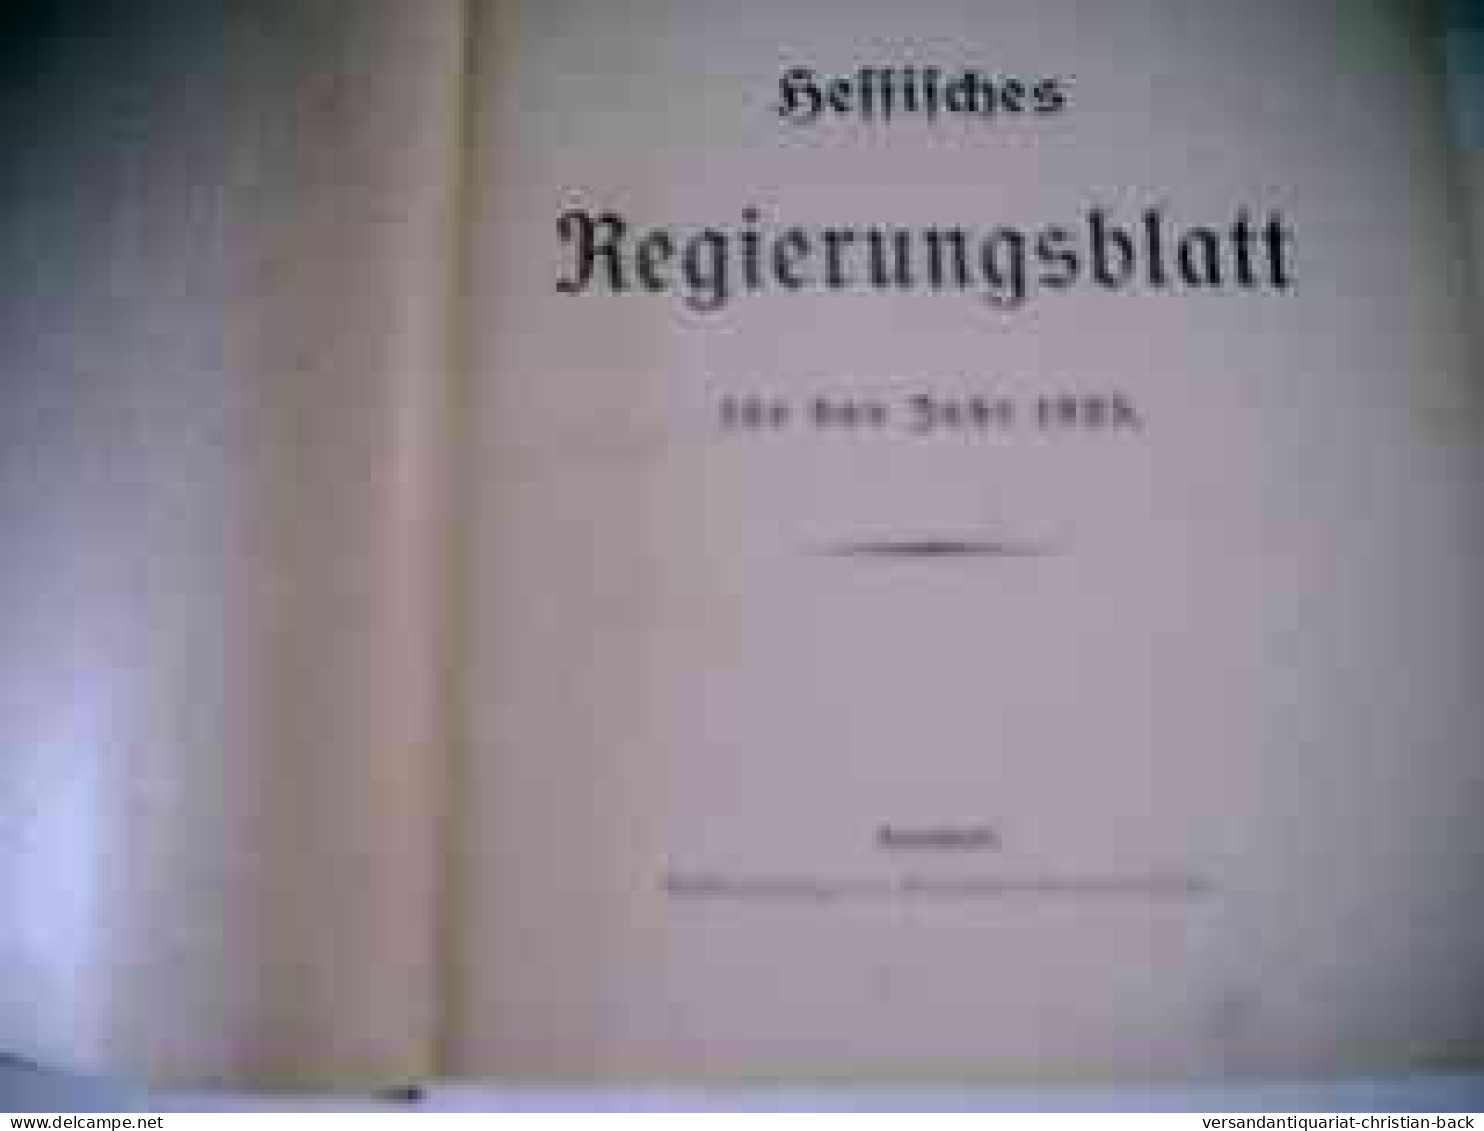 Hessisches Regierungsblatt Für Das Jahr 1925 - Rechten